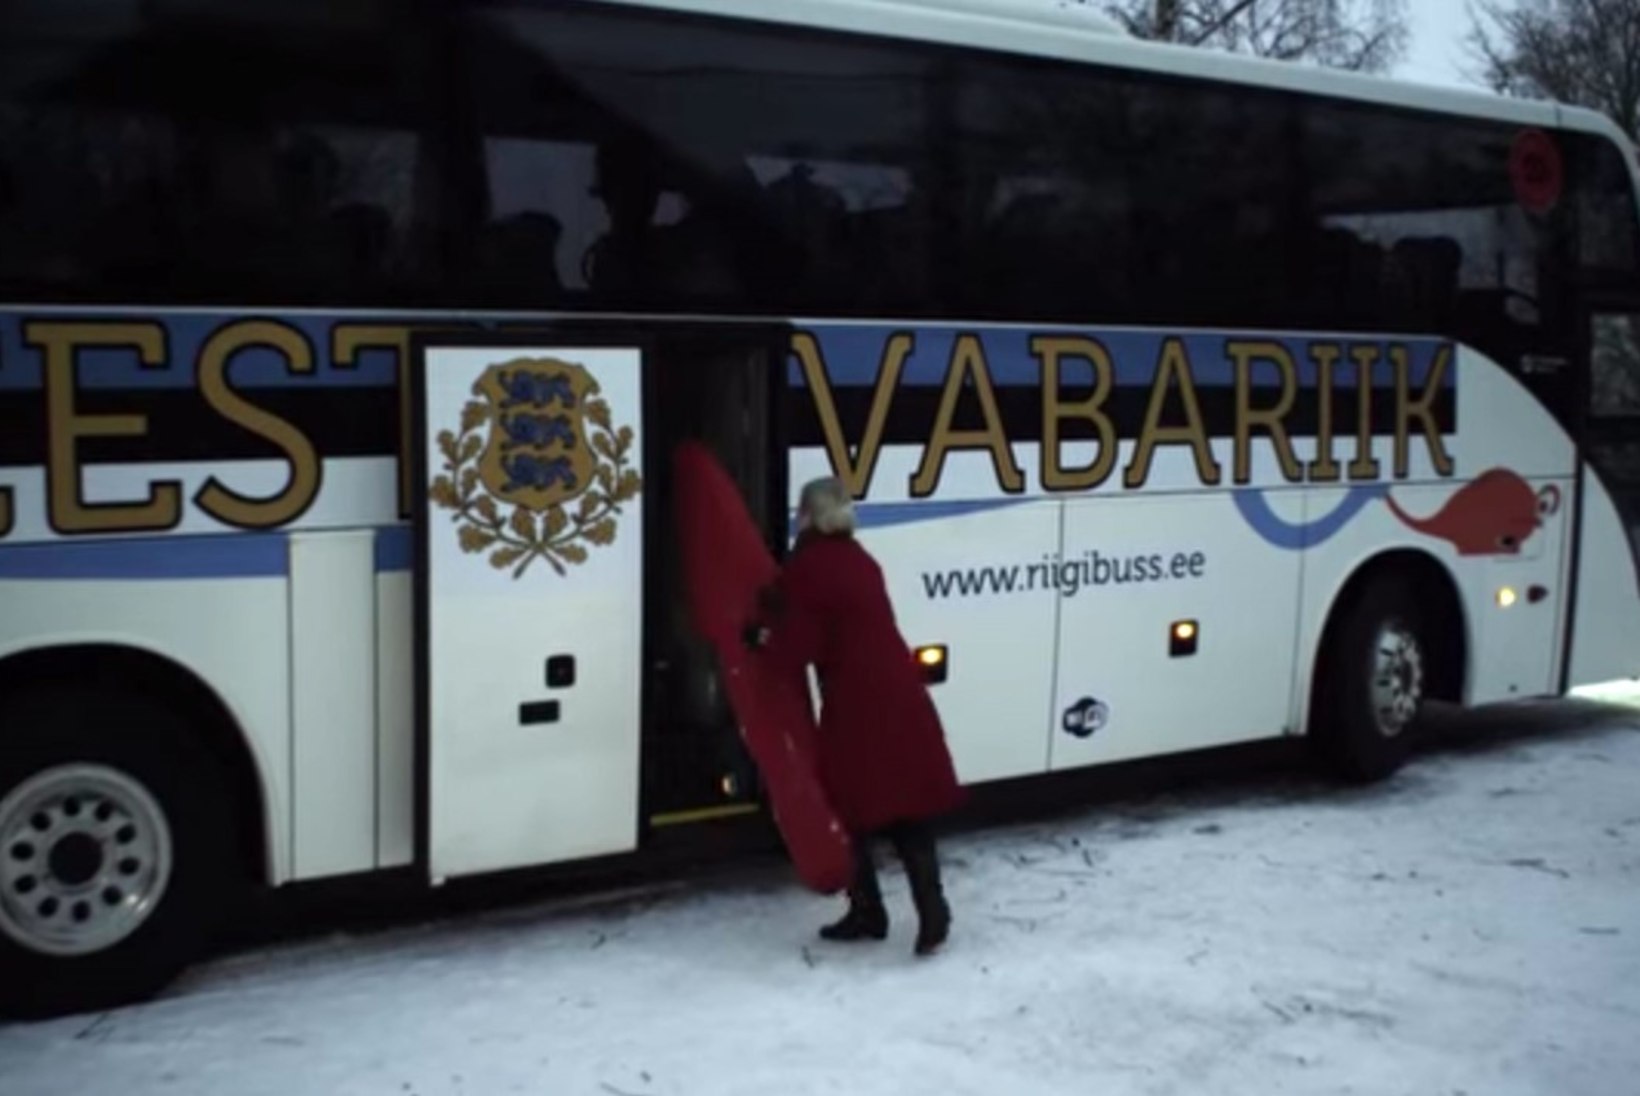 NAGU KAKS TILKA VETT: Taavi Rõivase pildiga buss meenutab "Tujurikkuja" riigibussi